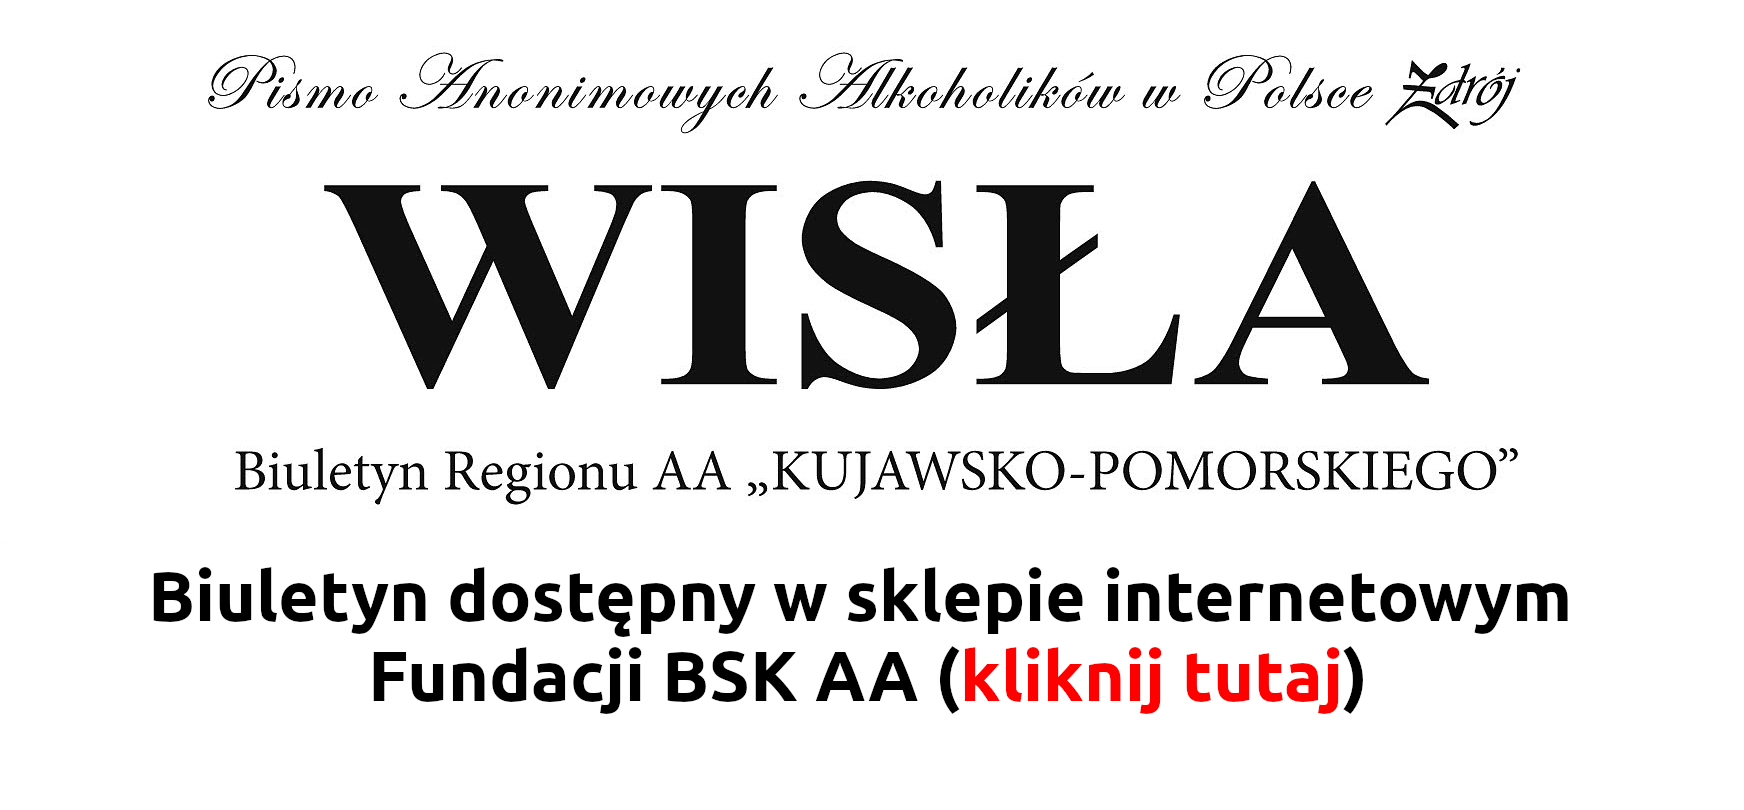 Wisla 2021 2(33) xxx